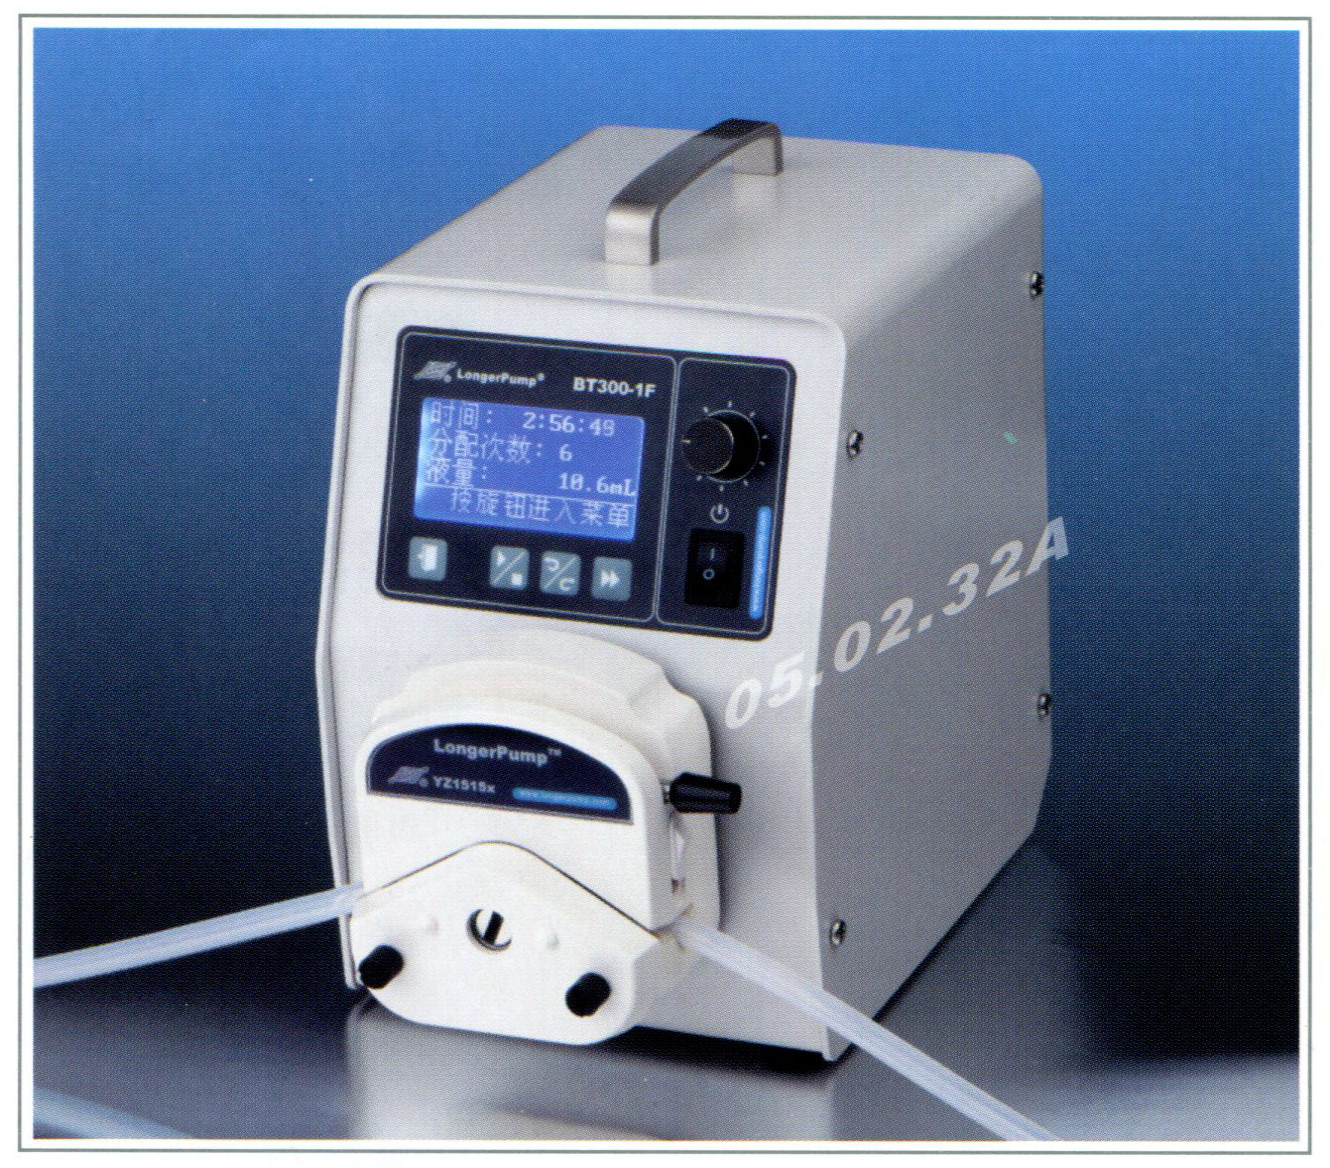 Longer pump, Peristaltic pump, BT300-1F